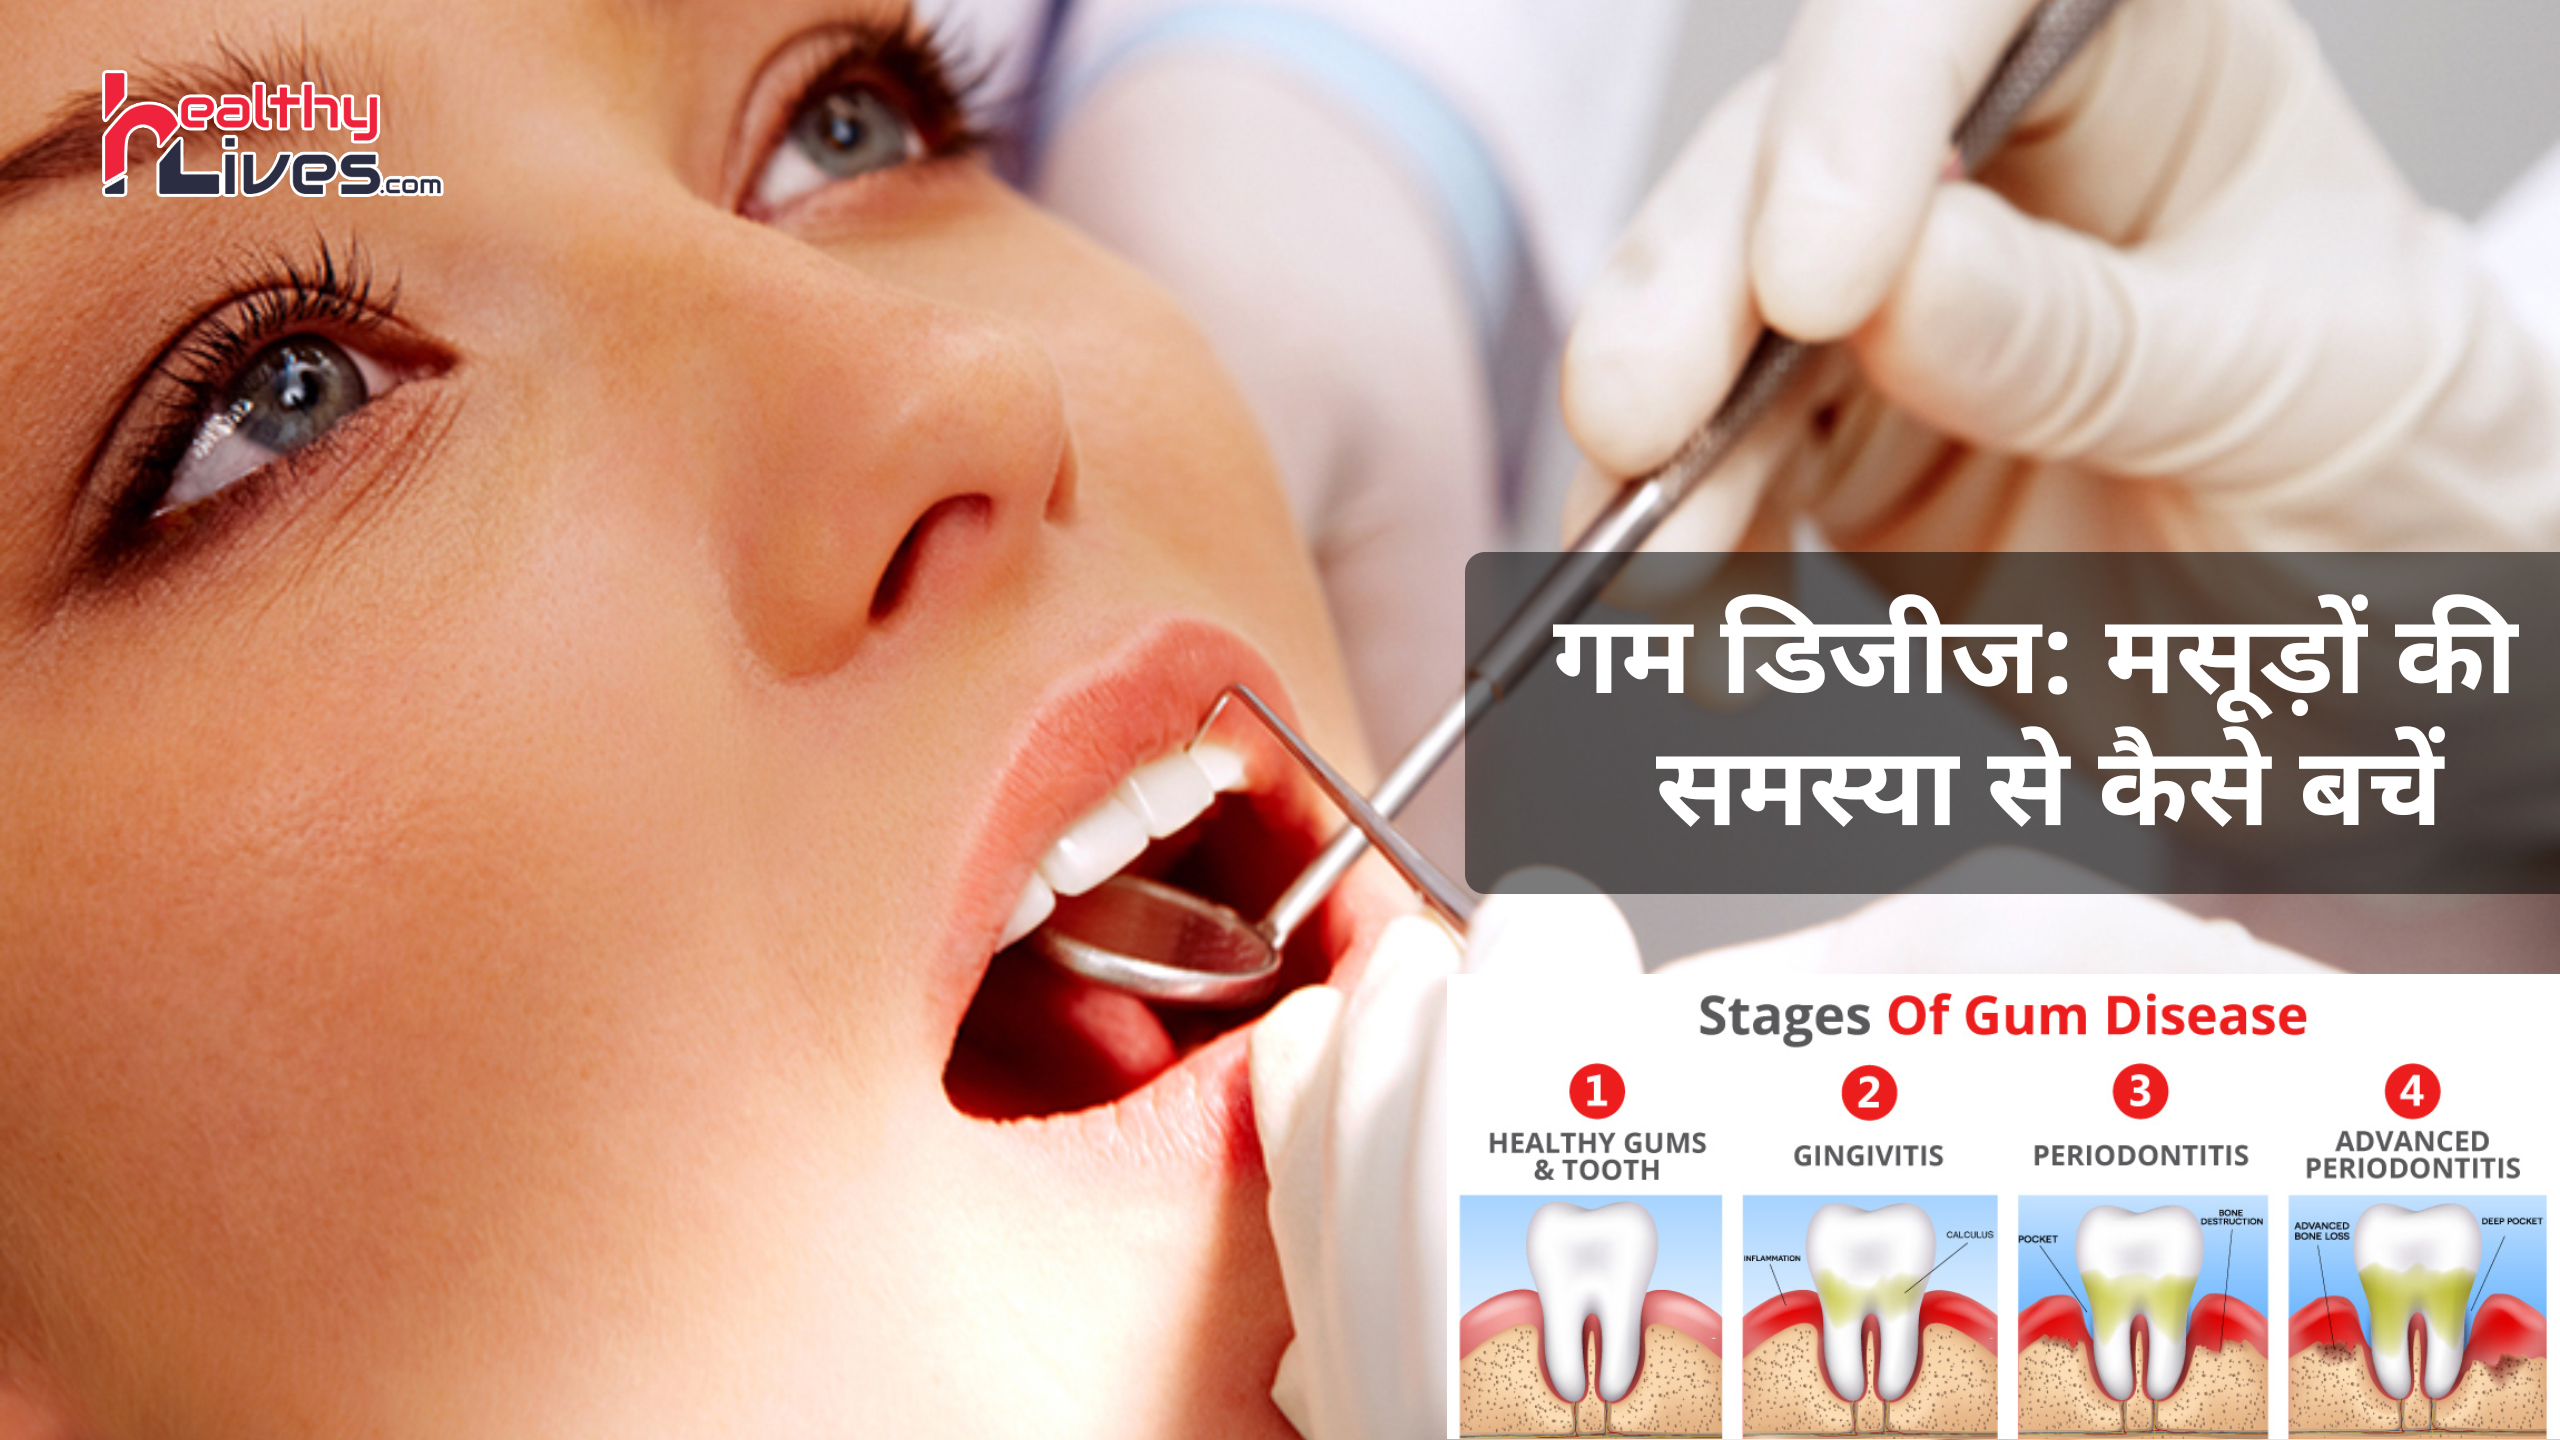 Gum Disease in Hindi: जानिए मसूड़ों की समस्याओं को कैसे कहें बाय-बाय